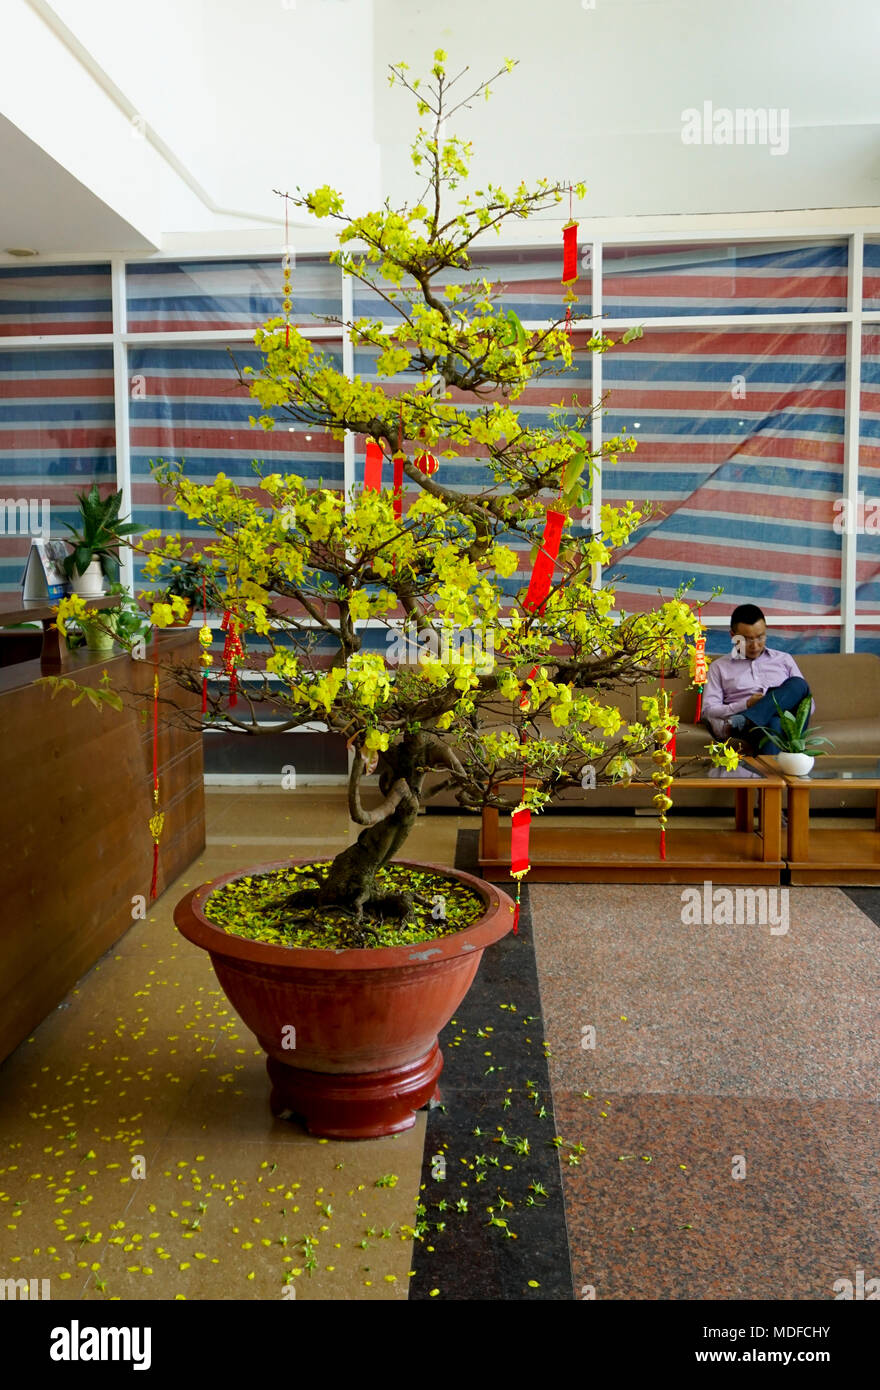 Live Amarillo albaricoque bonsai durante el Año Nuevo Lunar chino en el  vestíbulo de la oficina durante el Tet vacaciones, Ciudad Ho Chi Minh,  Saigón, Vietnam Fotografía de stock - Alamy